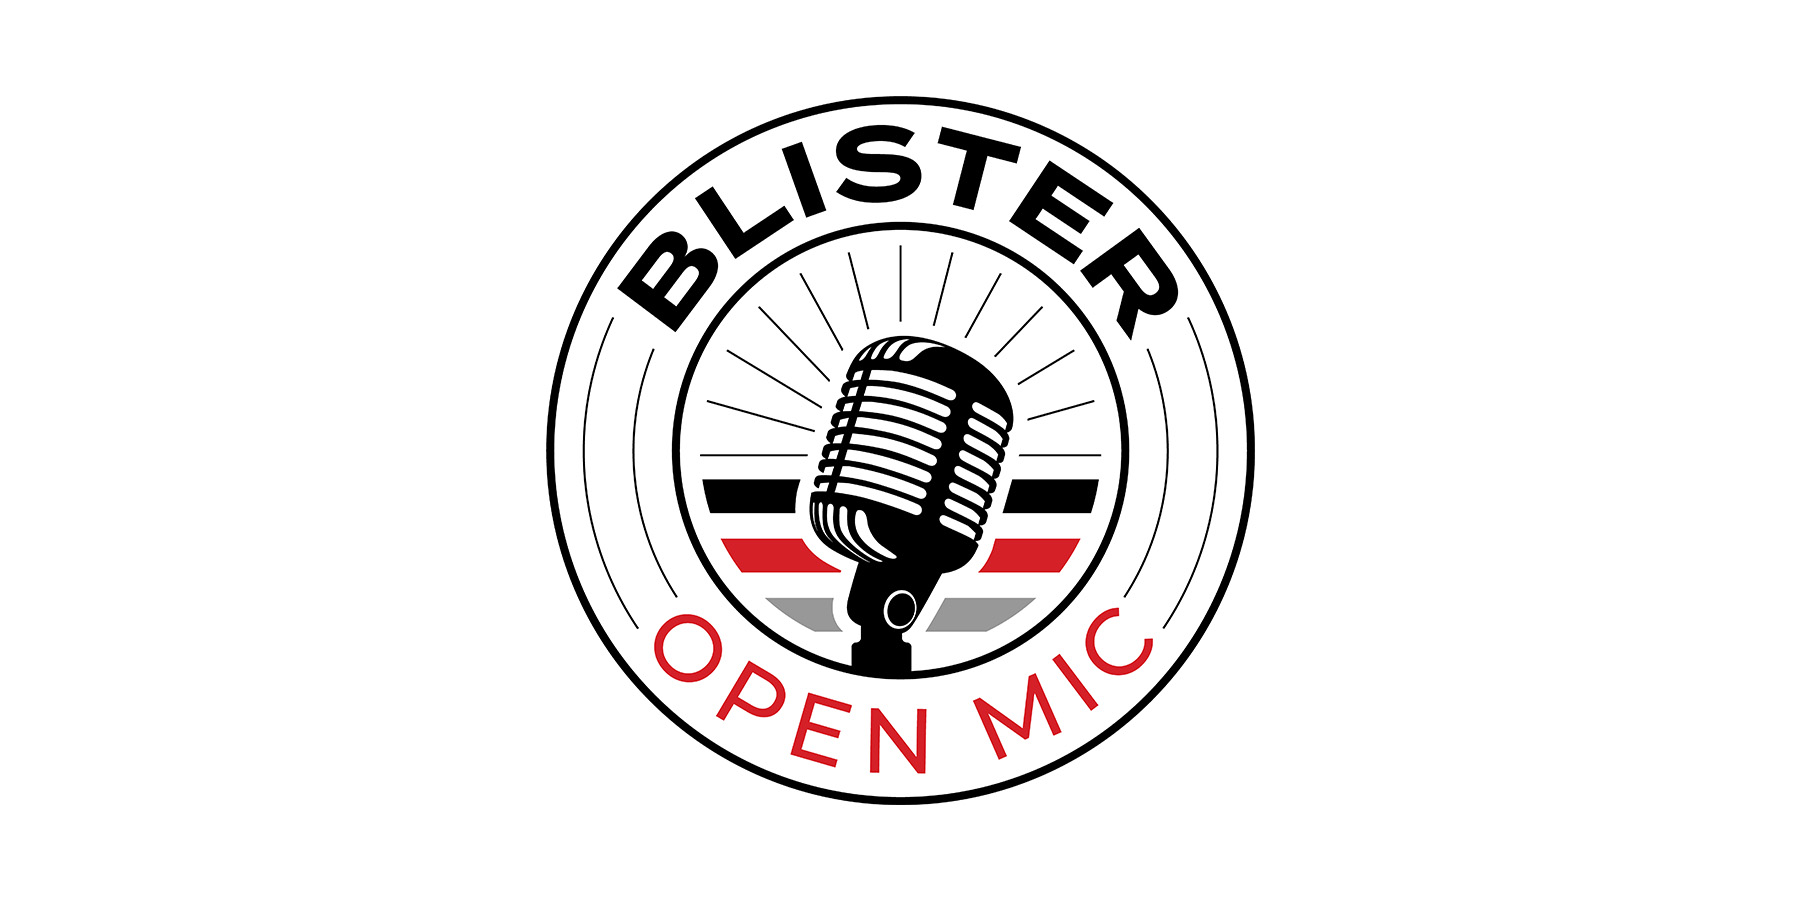 Blister Open Mic